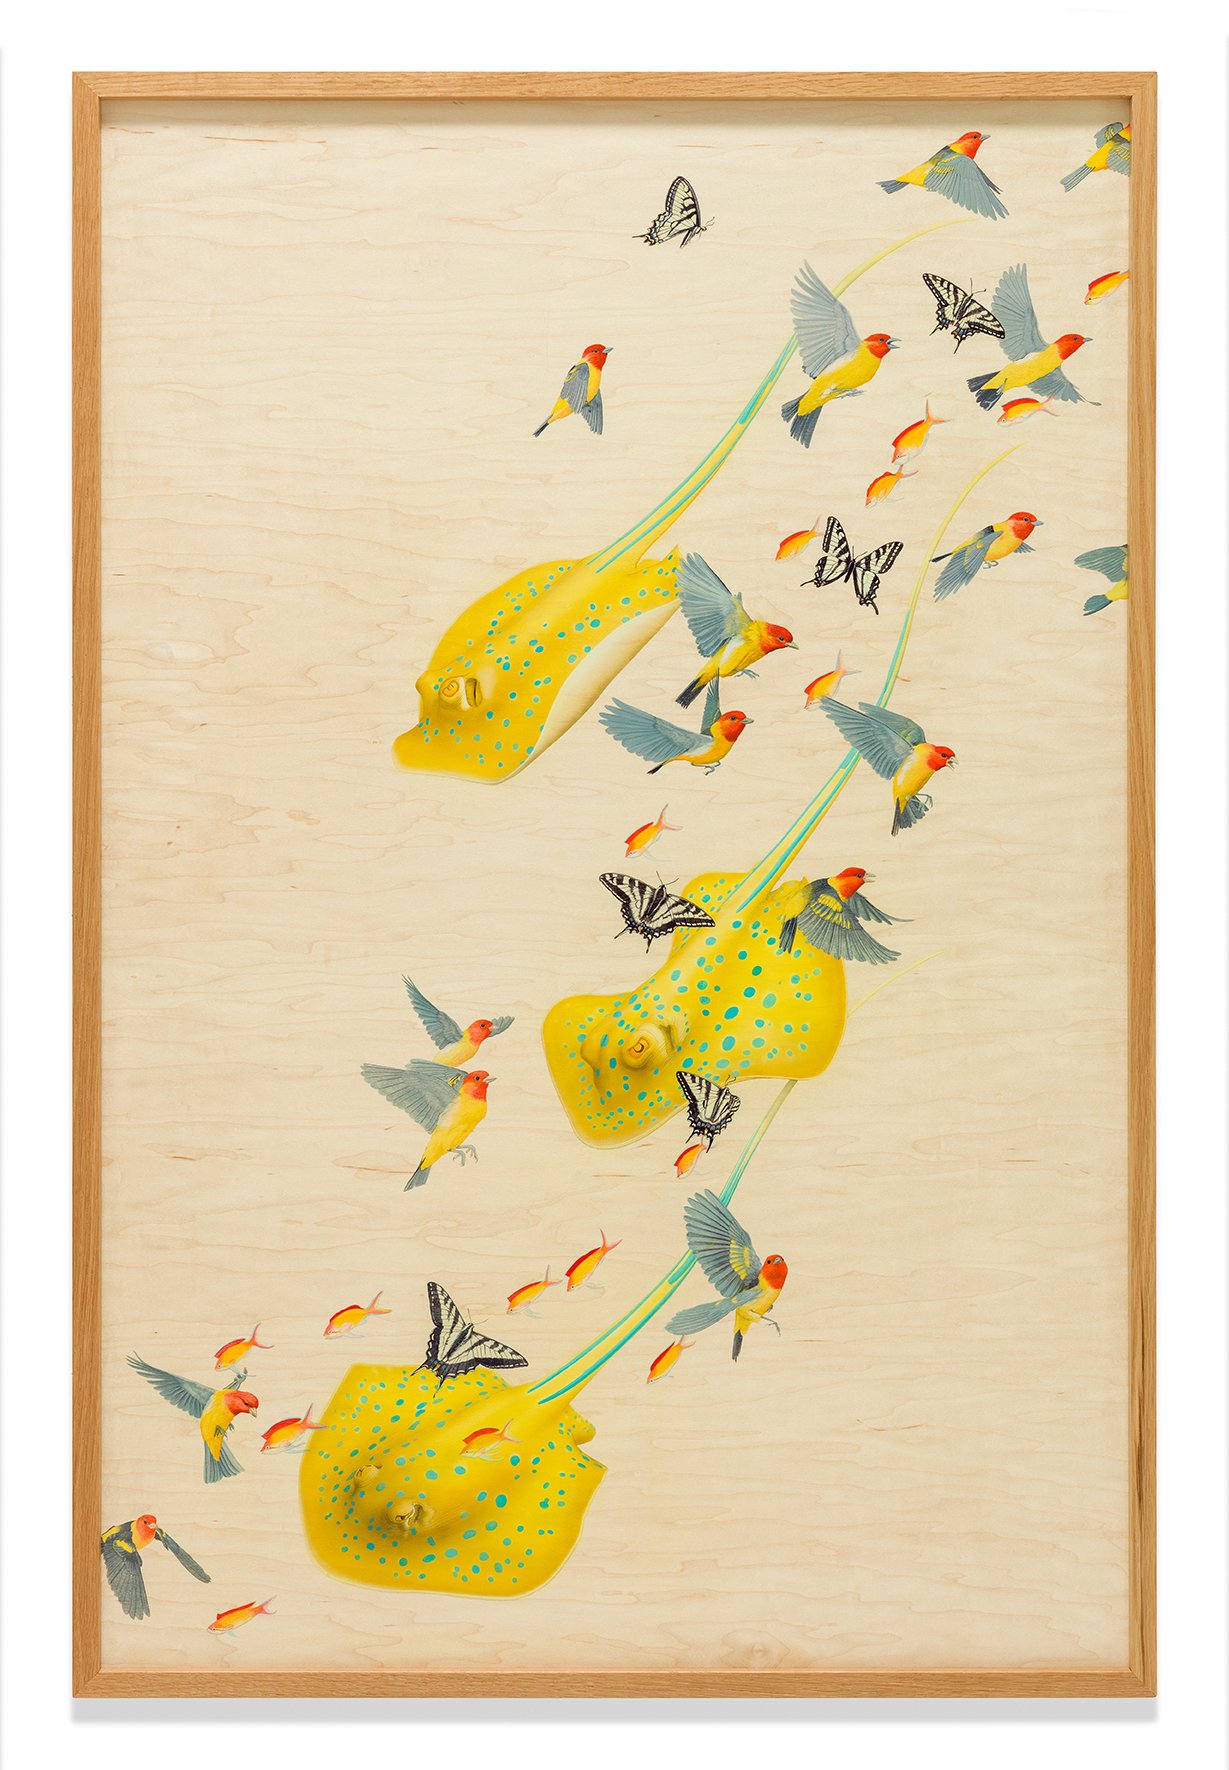 JOY, 48.5 x 32”, acrylic on maple panel, 2017